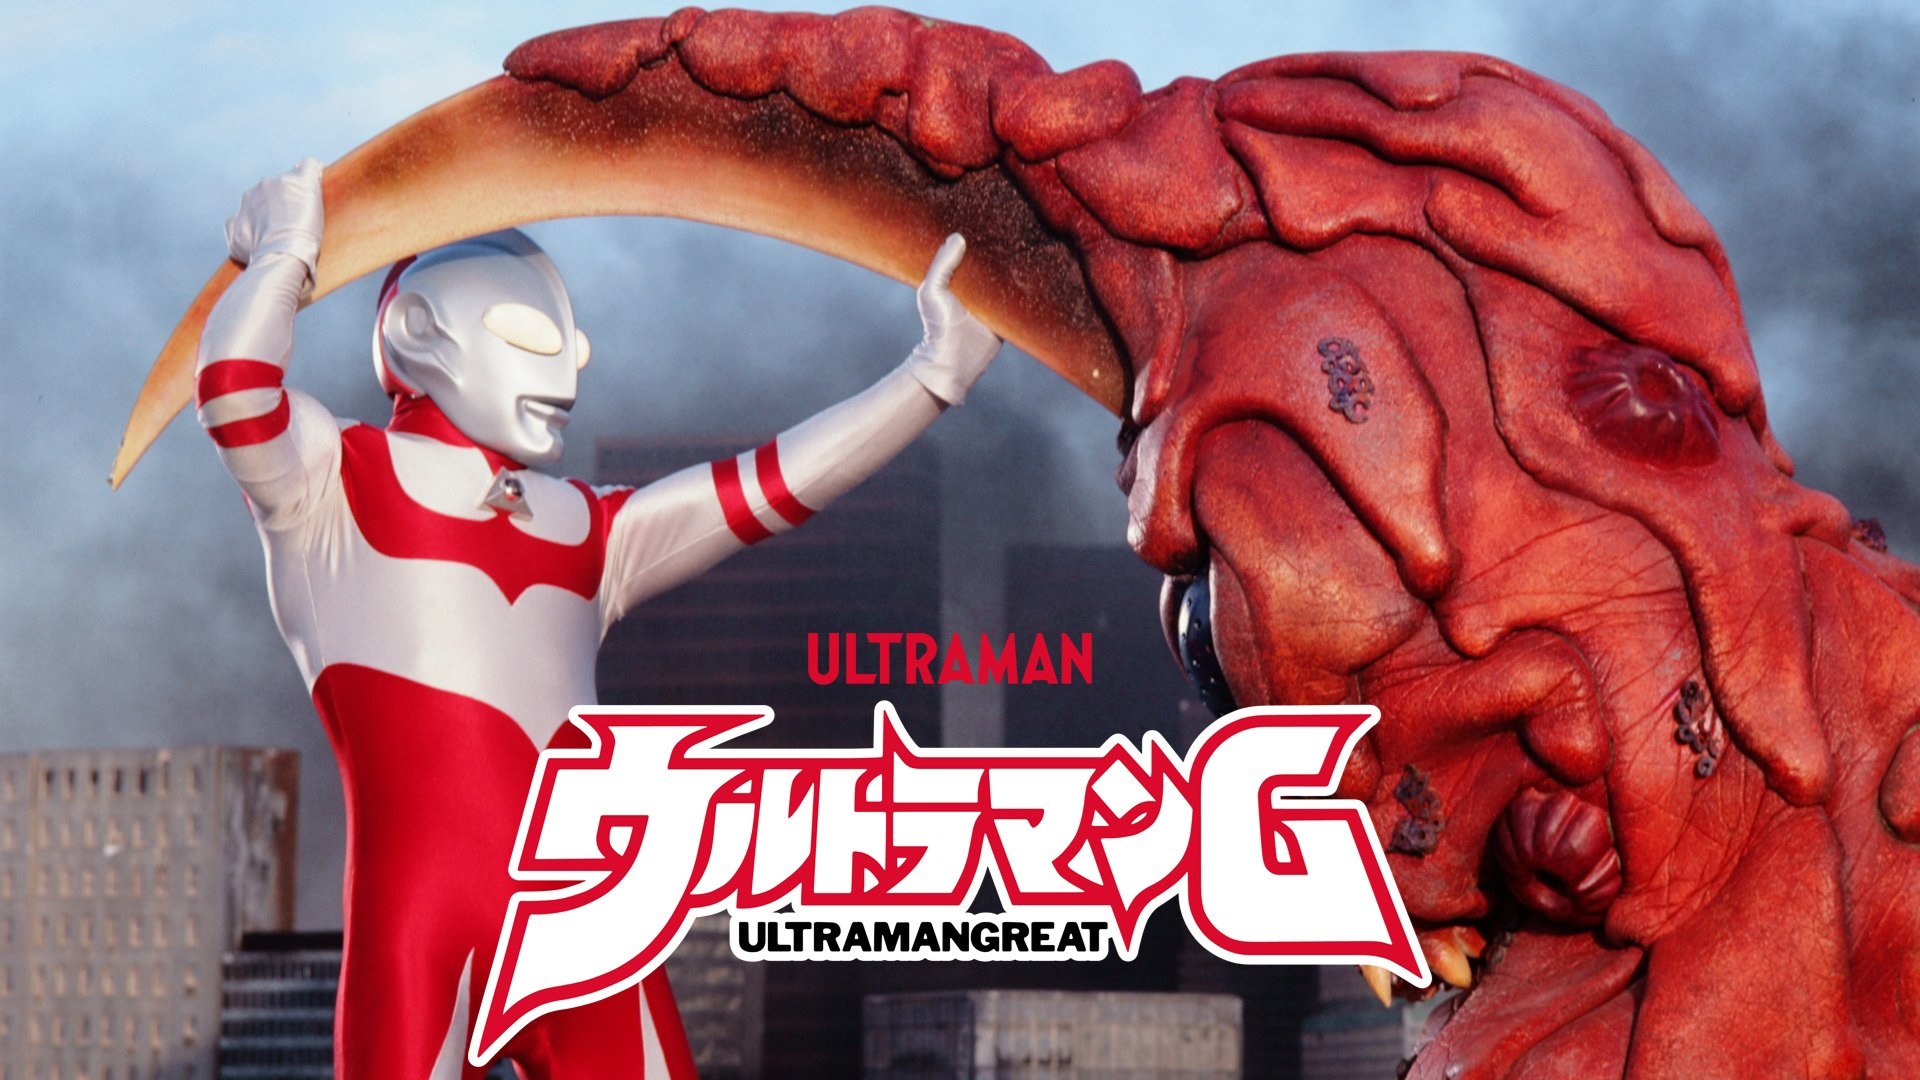 ウルトラマンG / ウルトラマングレート / Ultraman: Towards the Future / Ultraman Great